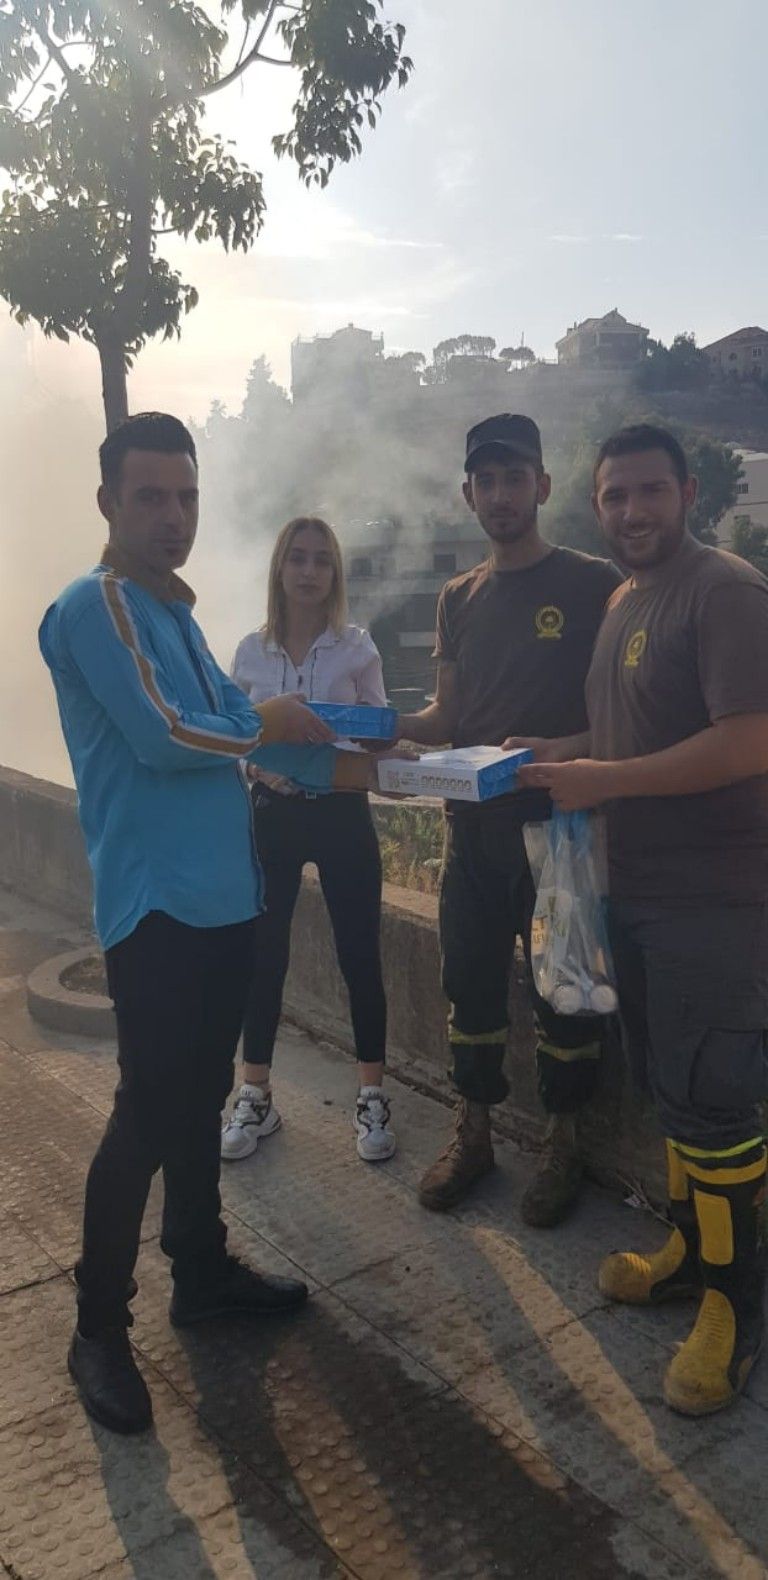 مطعم الحياة تركي دونر يقدم الوجبات طعام  للدفاع المدني أثناء أخمادهم للحريق في مختلف المناطق تقديرا لجهودهم وتضحياتهم  الجبارة